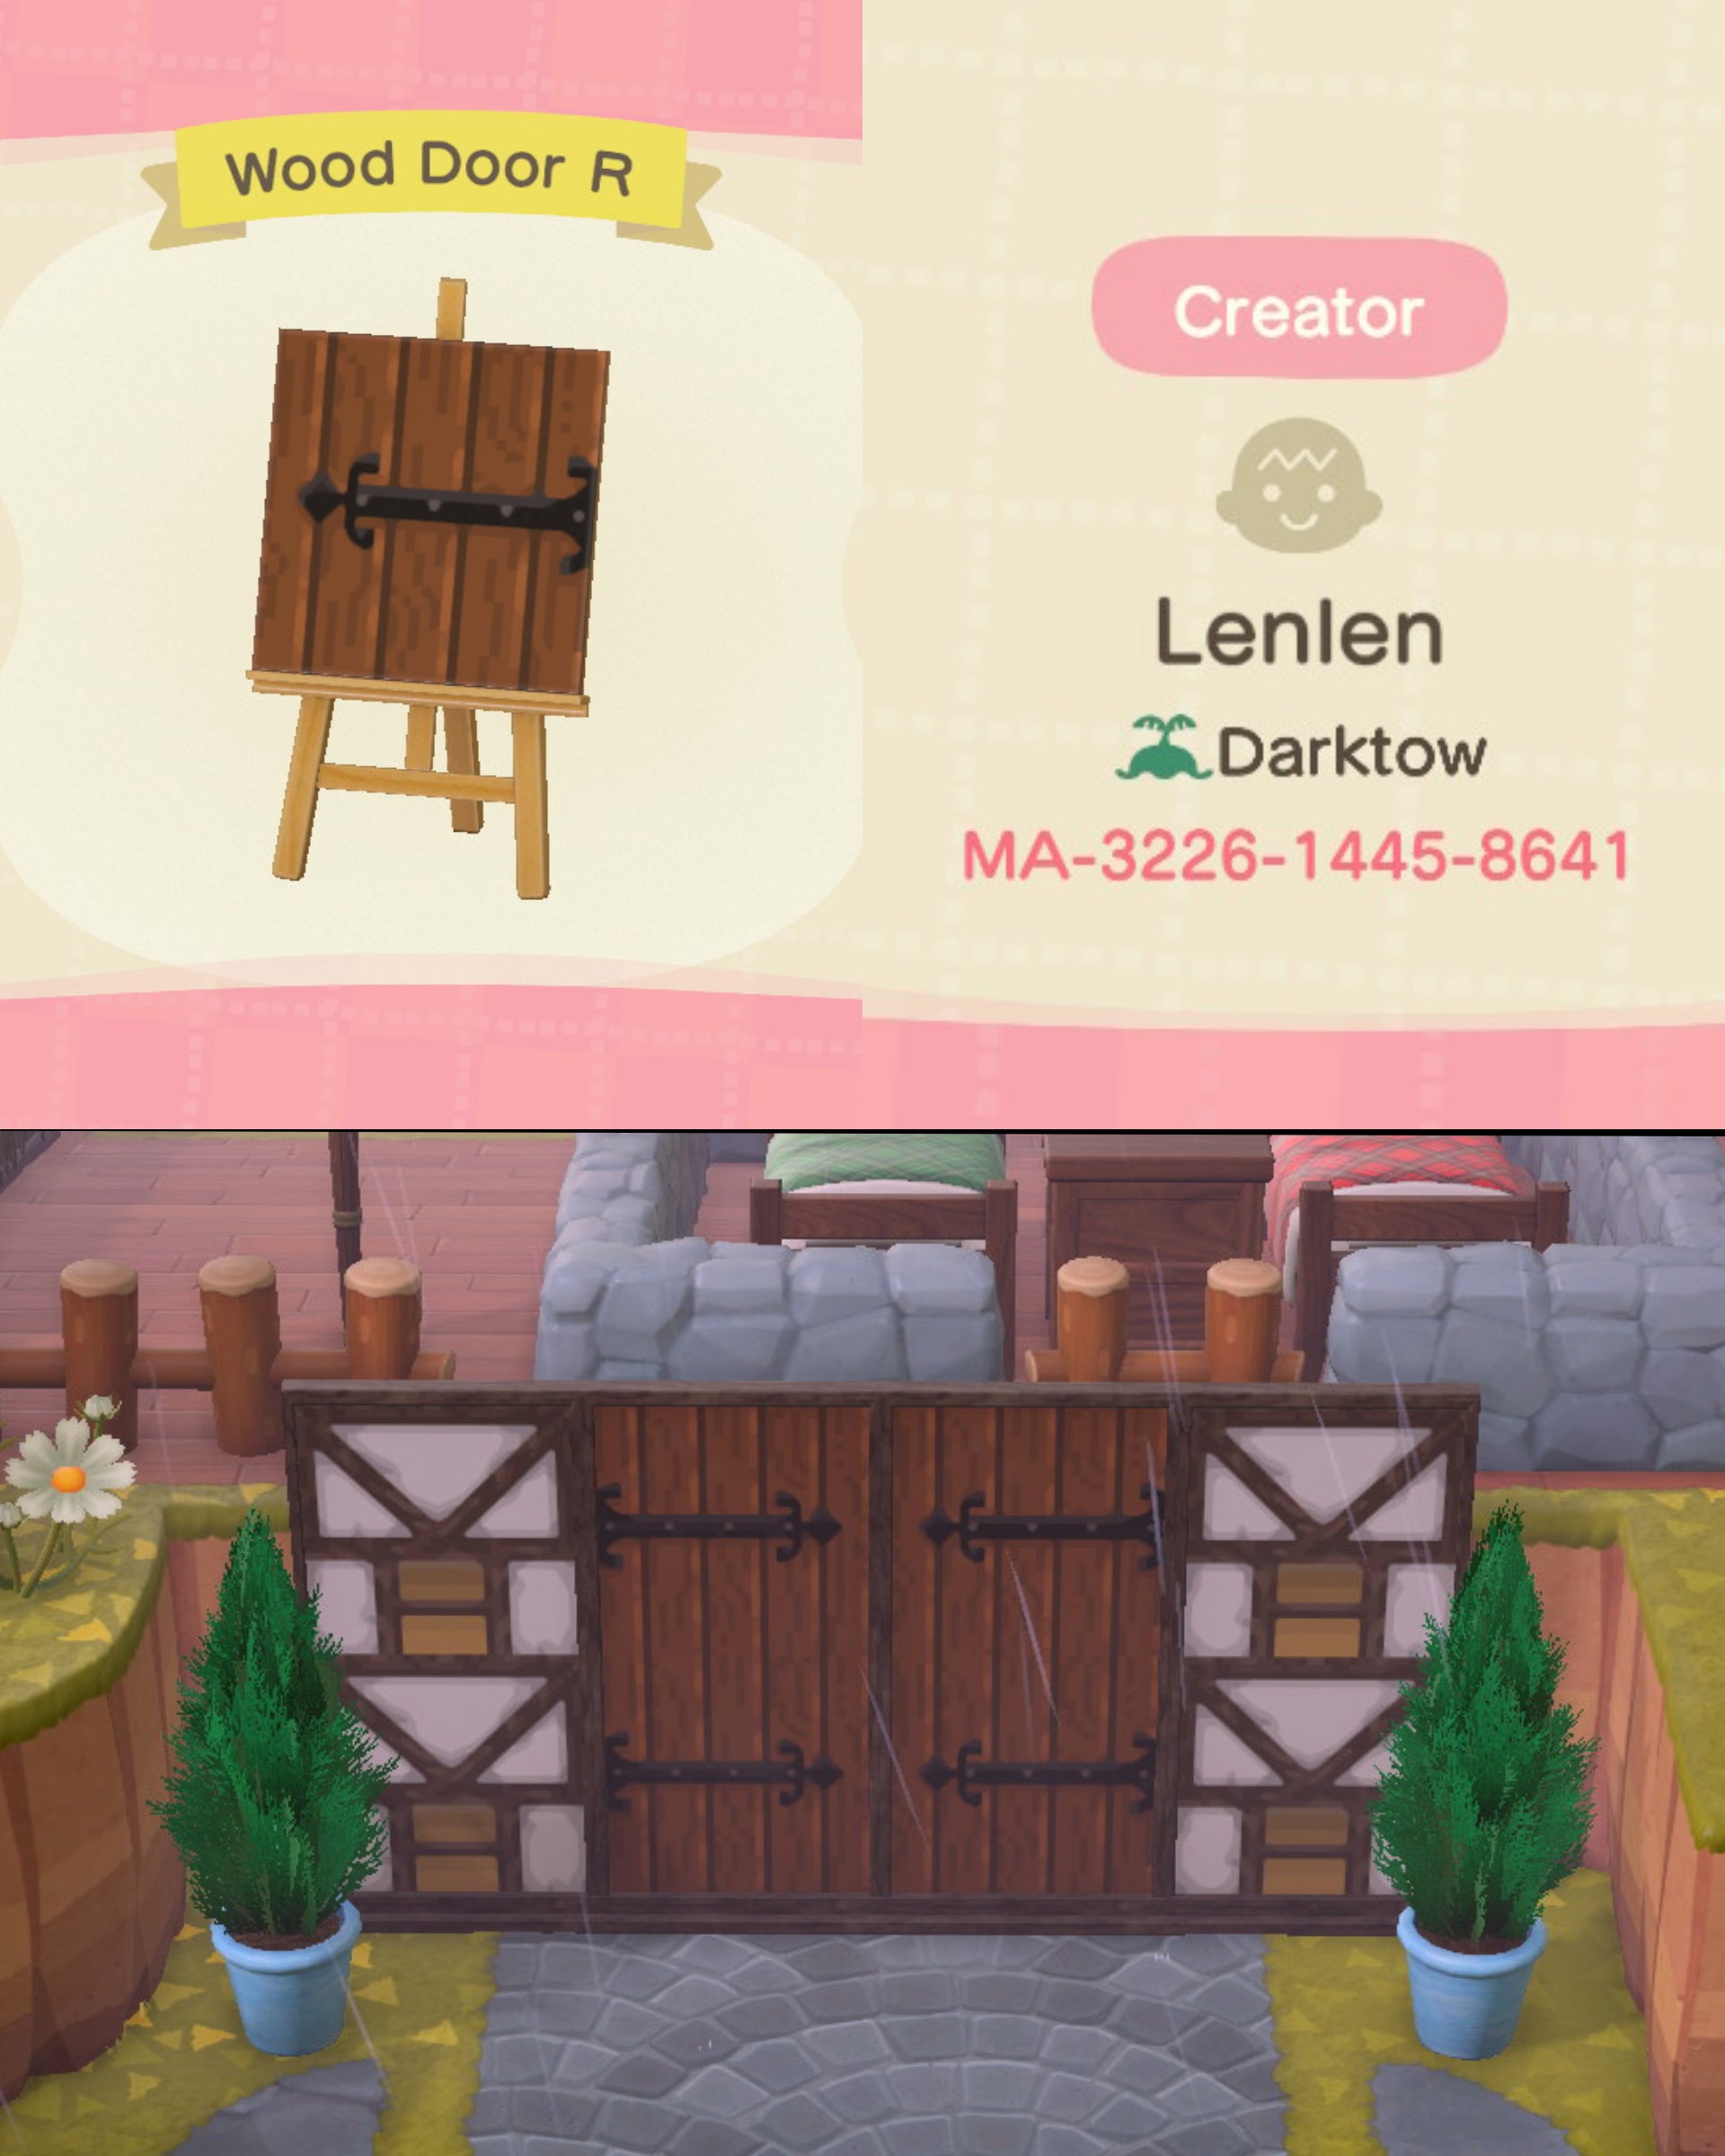 Animal Crossing Updated my popular wooden door design and added